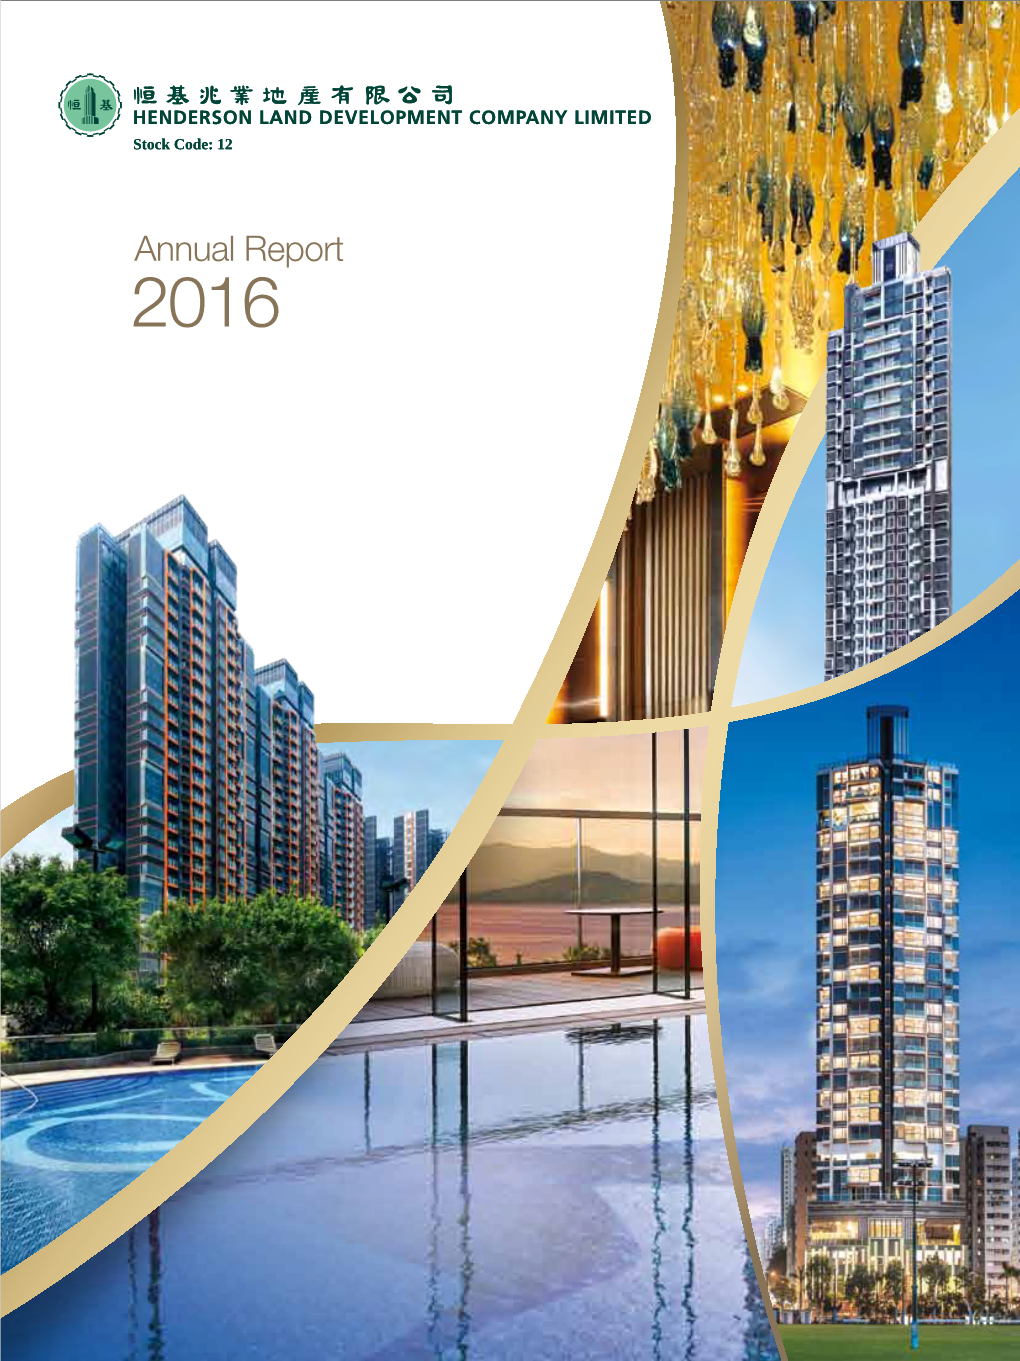 Annual Report 2016 Annual Report 2016 CORPORATE PROFILE